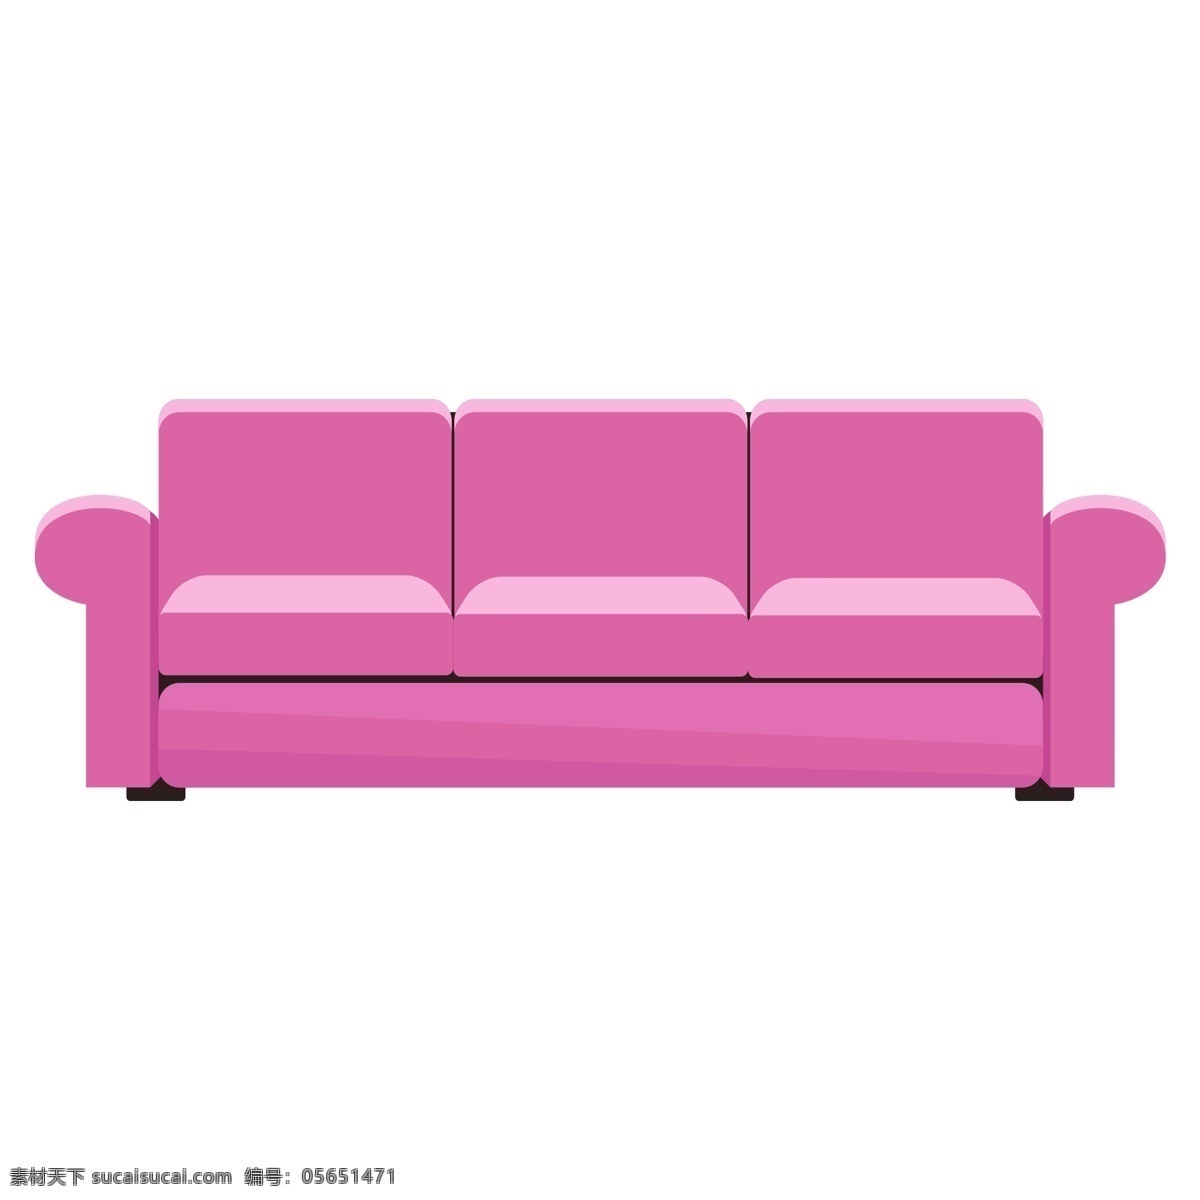 手绘 卡通 粉色 沙发 元素 插画元素 简约 免扣素材 粉色沙发